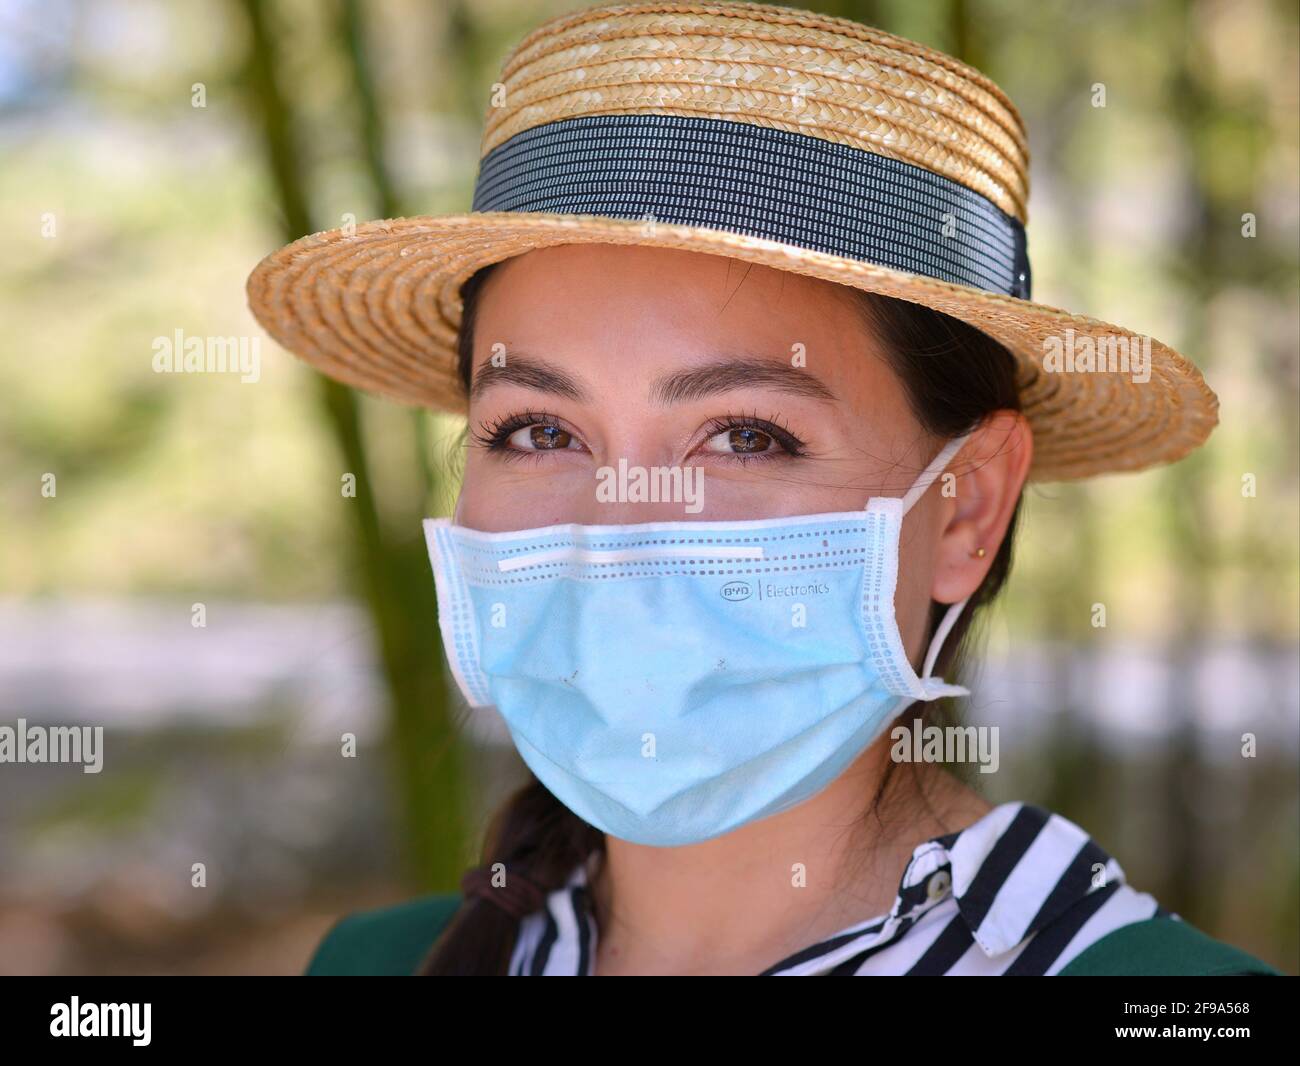 Hermosa joven mexicana lleva un elegante sombrero de paja panameña y se posa con una máscara quirúrgica azul claro durante la pandemia global de coronavirus. Foto de stock